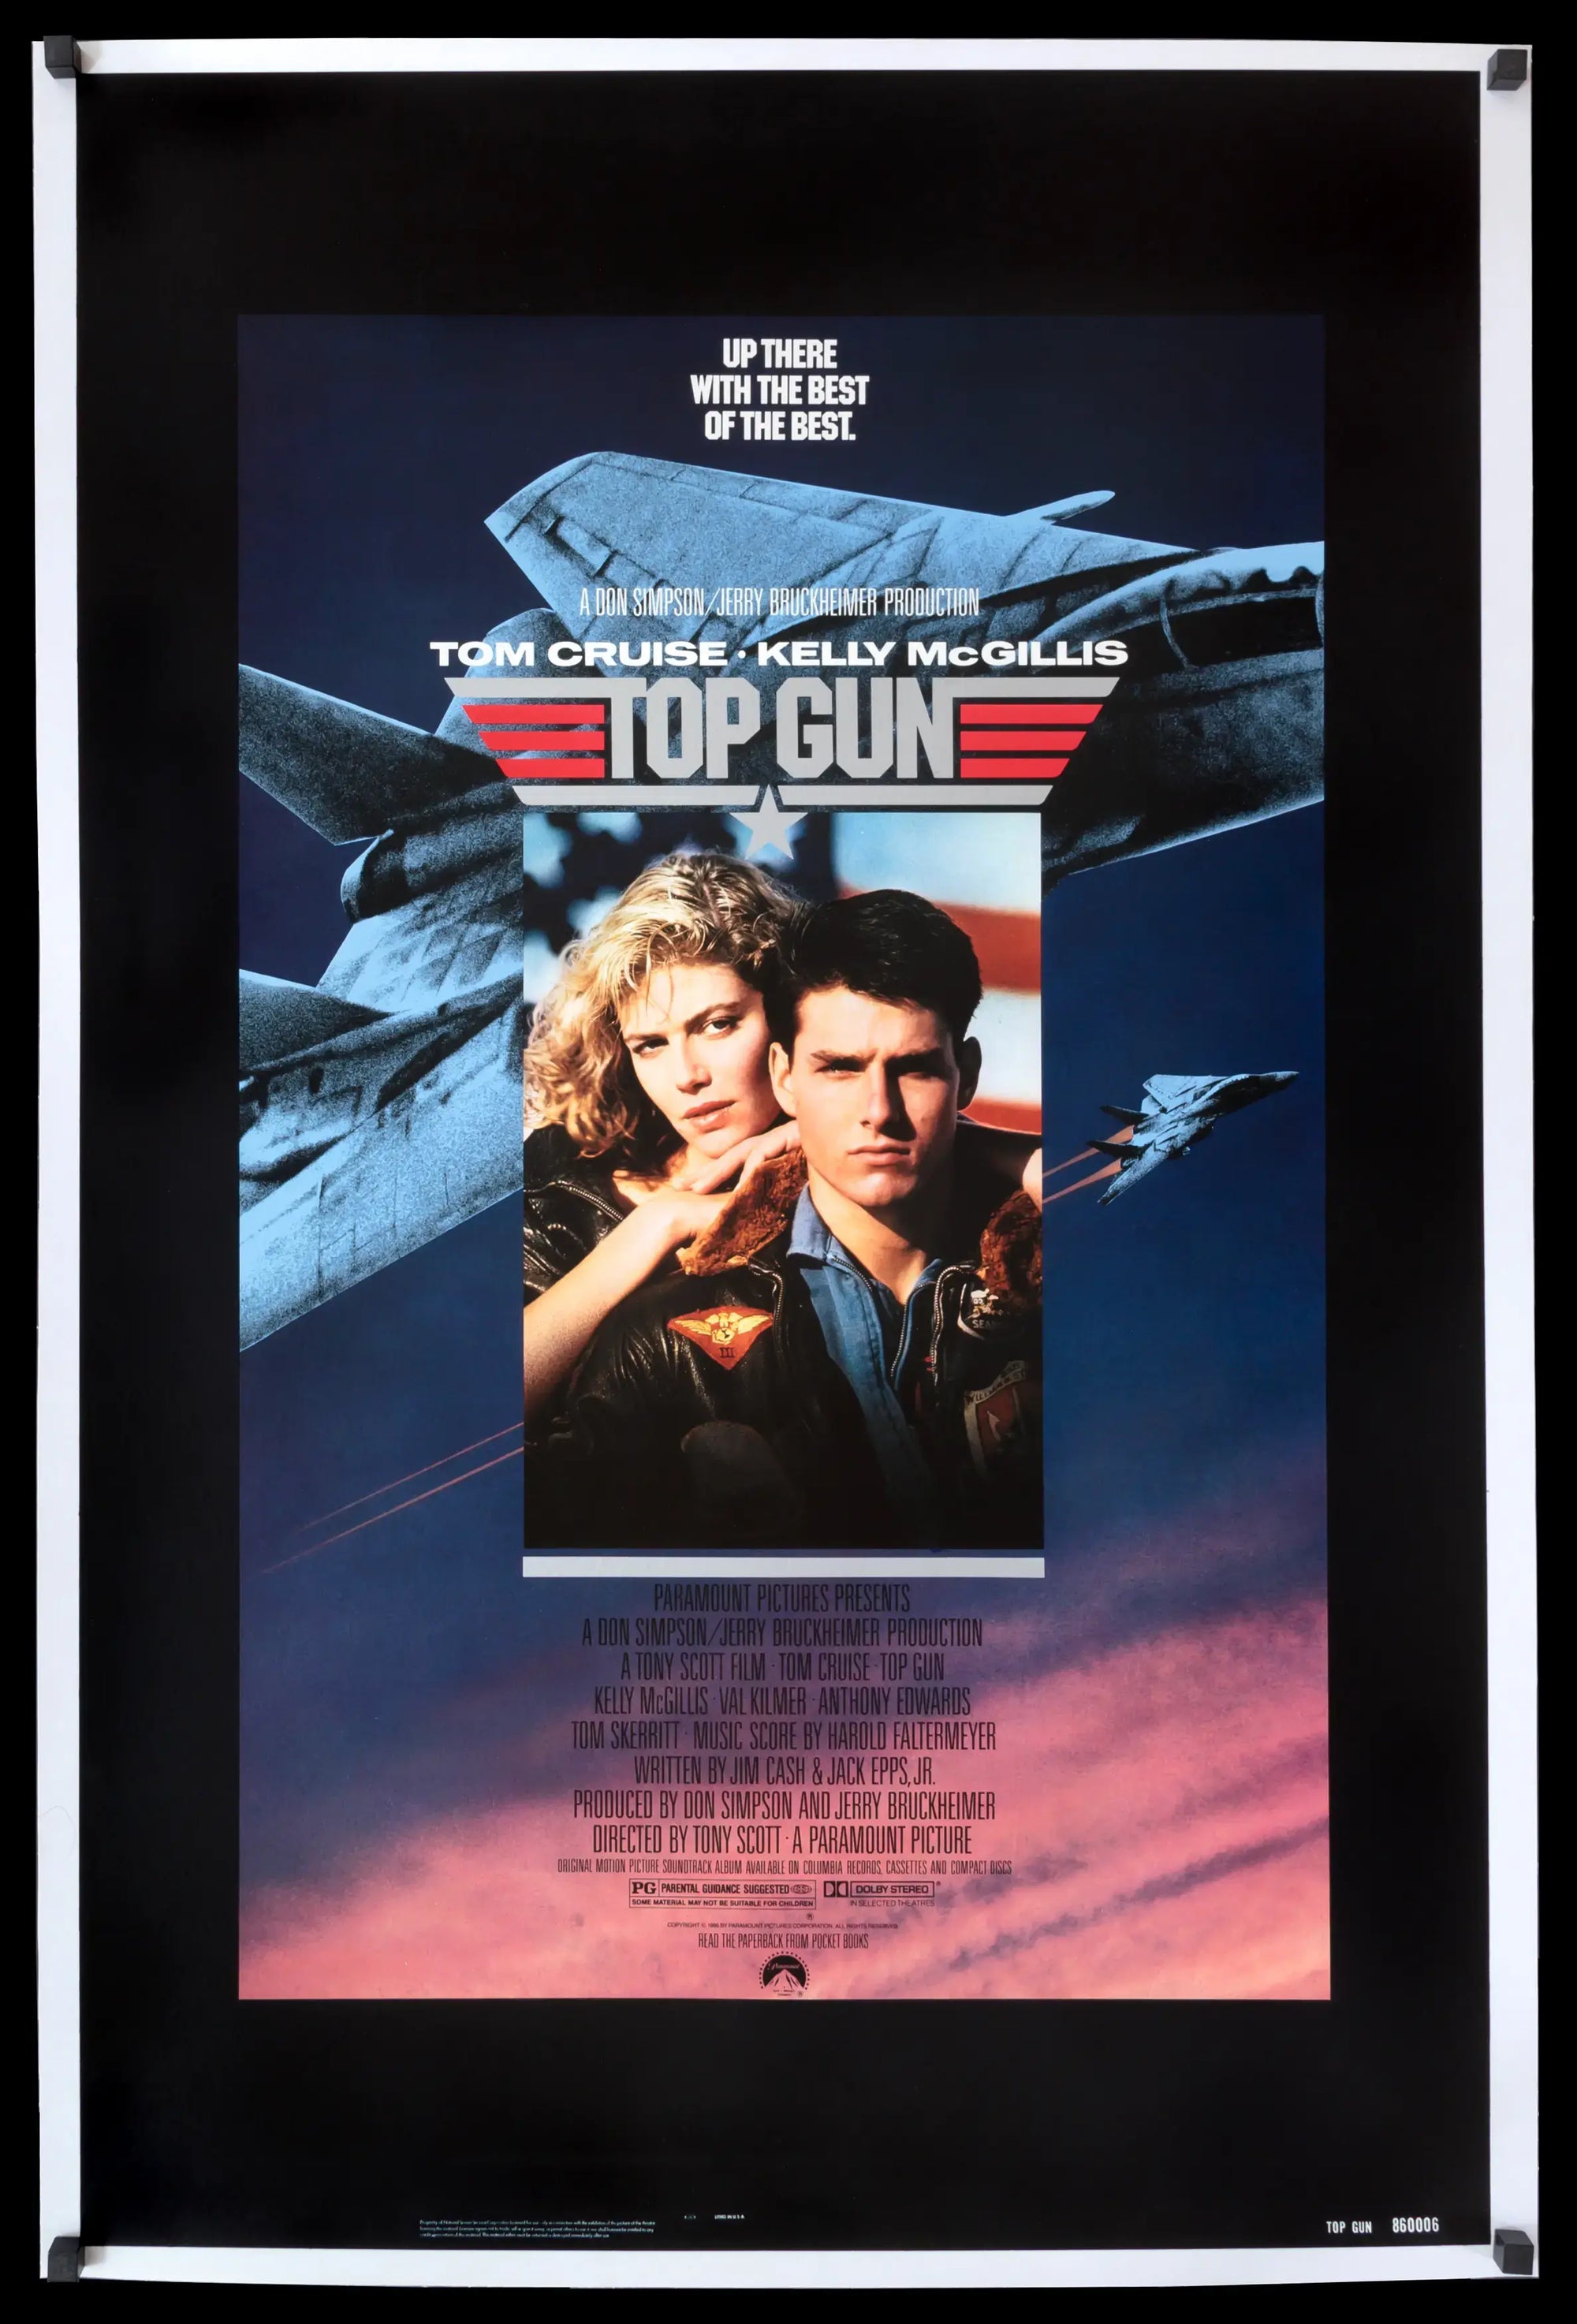 Top Gun (1986) original movie poster for sale at Original Film Art